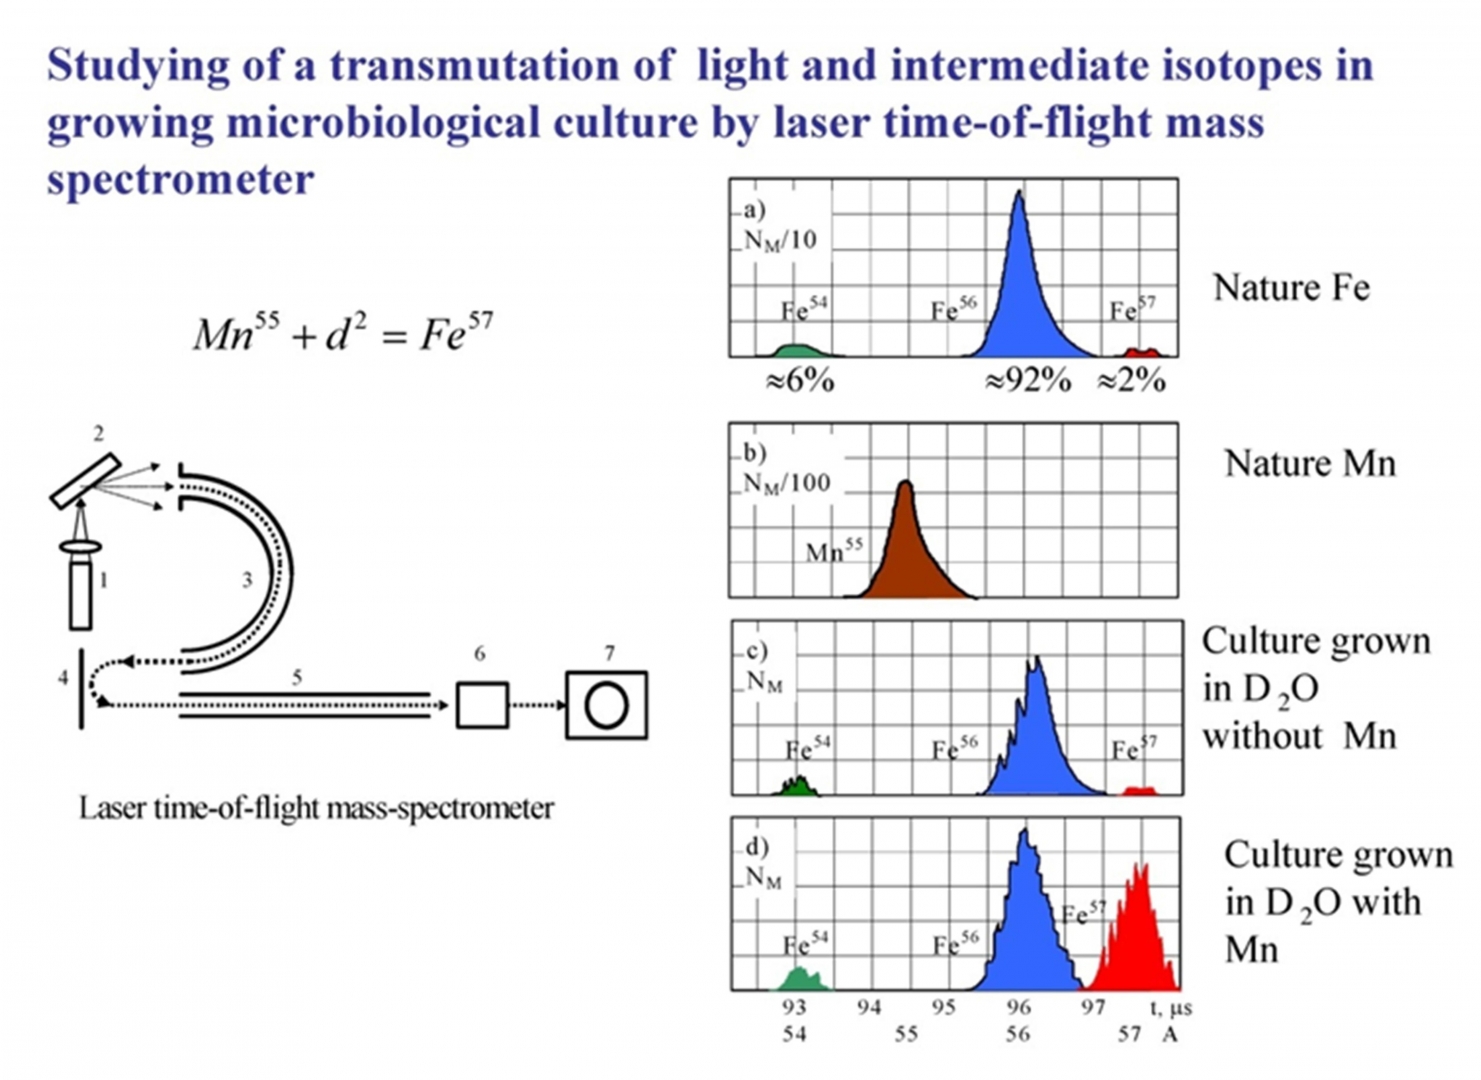 Рис. 62. Схема регистрации синтеза Fe-57 на лазерном время-пролетном спектрометре